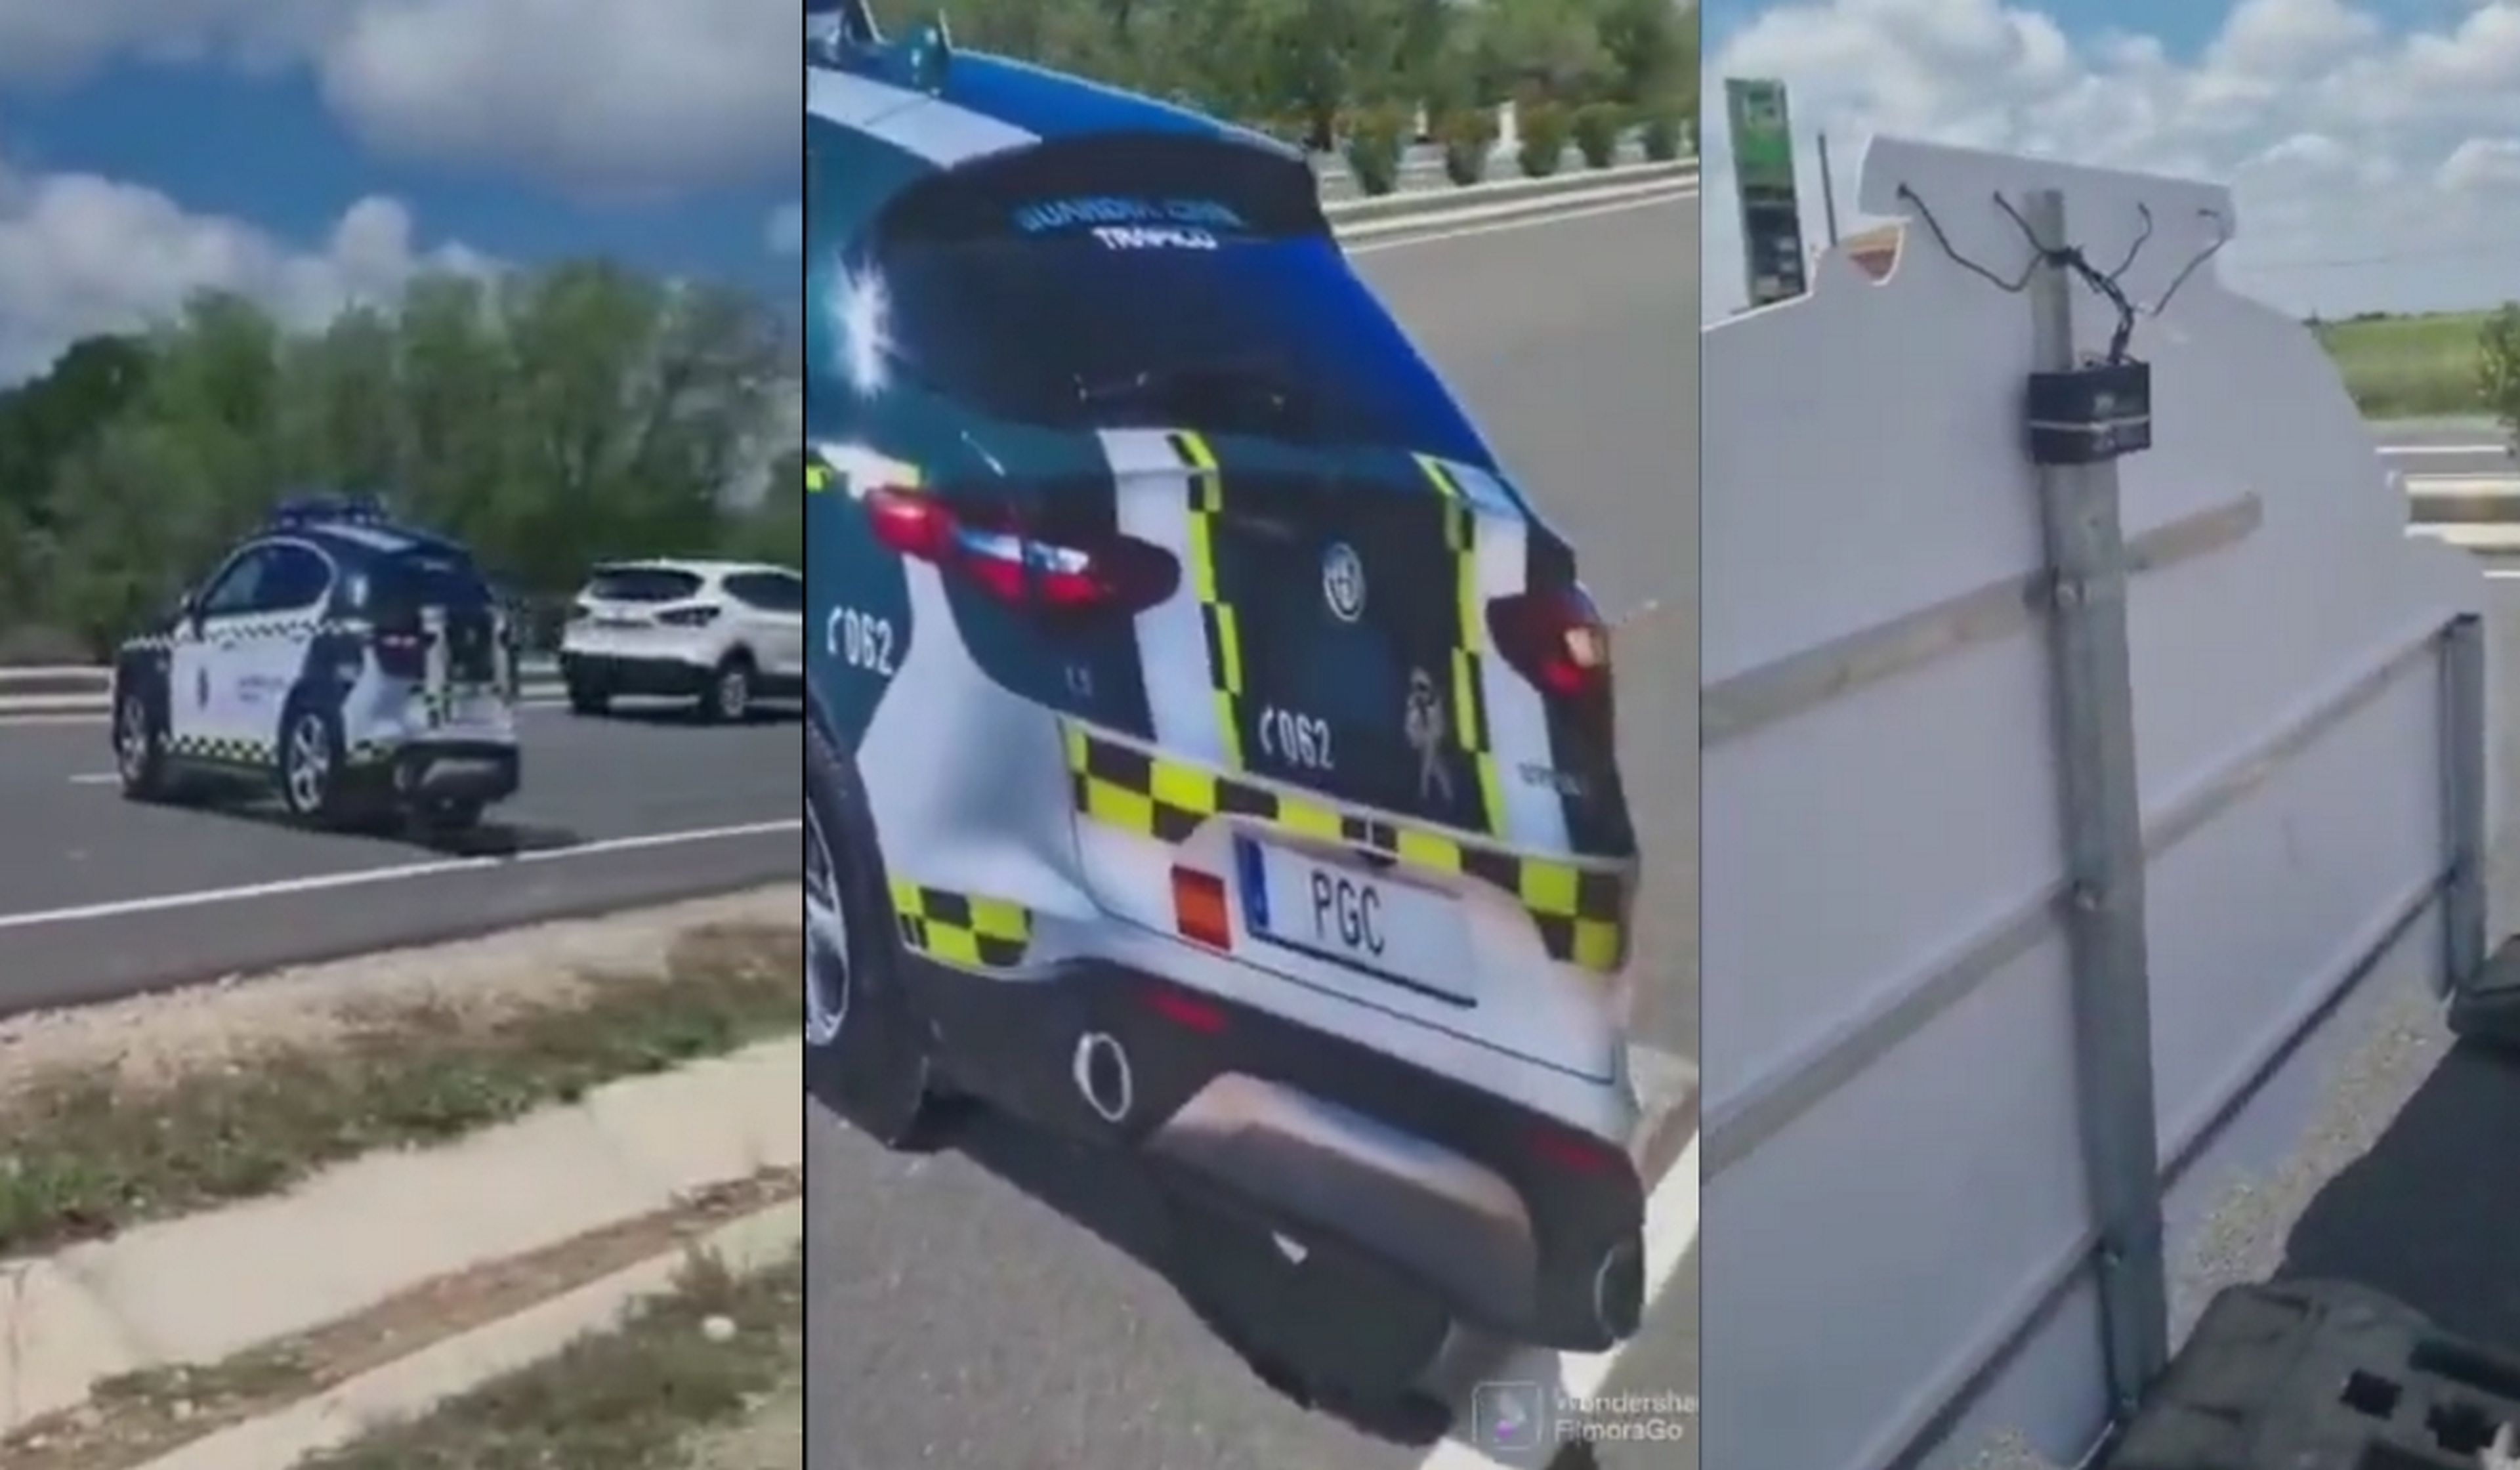 La verdad sobre el coche patrulla de cartón: no lo puso la Guardia Civil